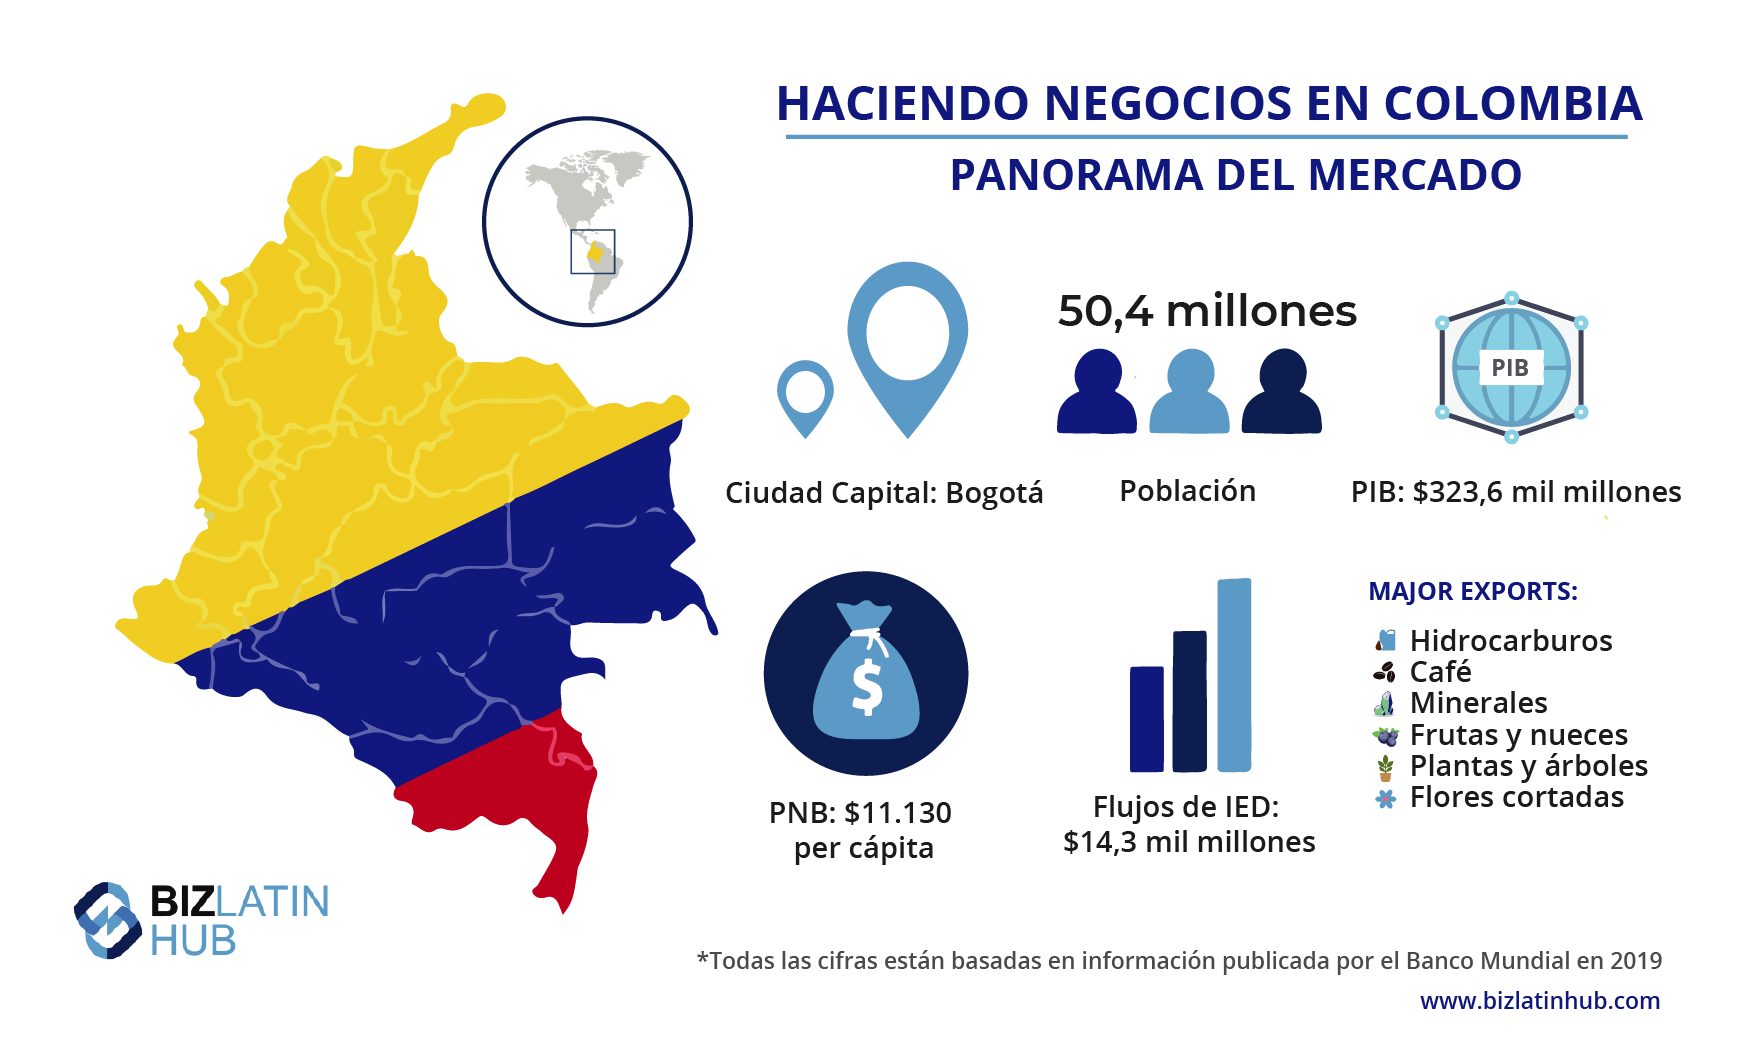 Panorama del mercado de Colombia, información relevante para cualquiera pensando en contratar a un agente de formación de empresas en Colombia.